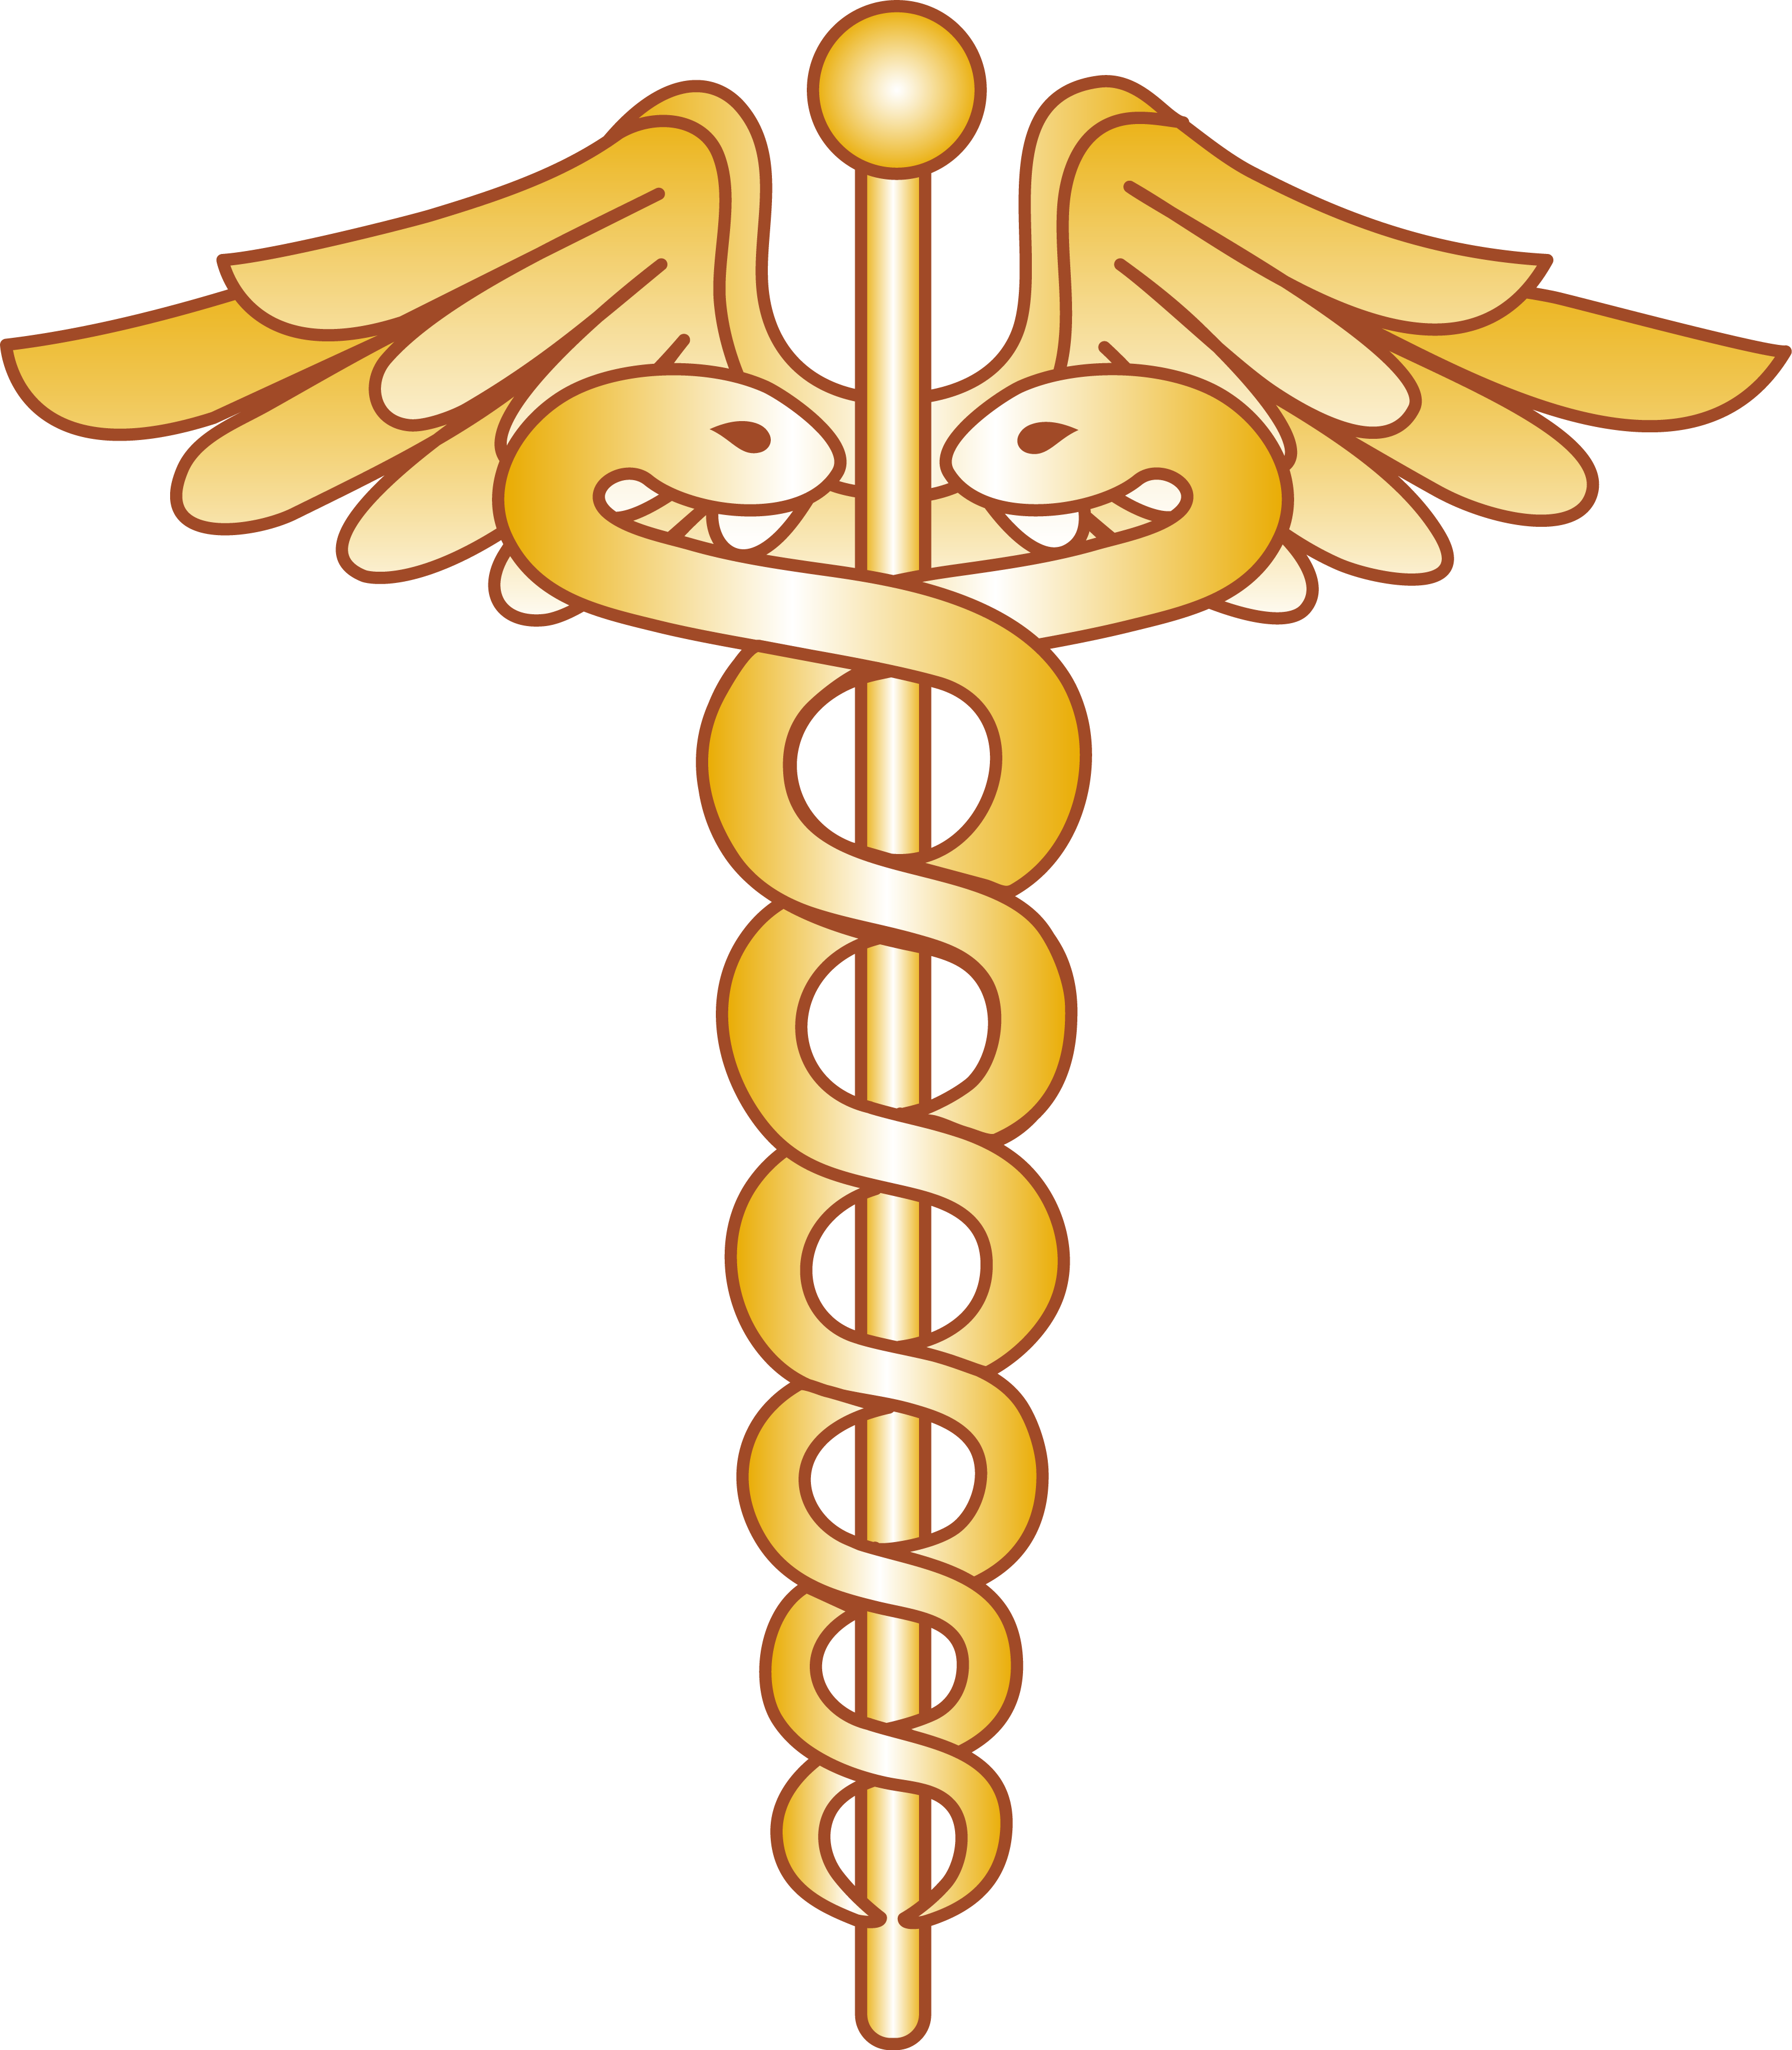 Pharmacy clipart easter. Health medicine snake symbol